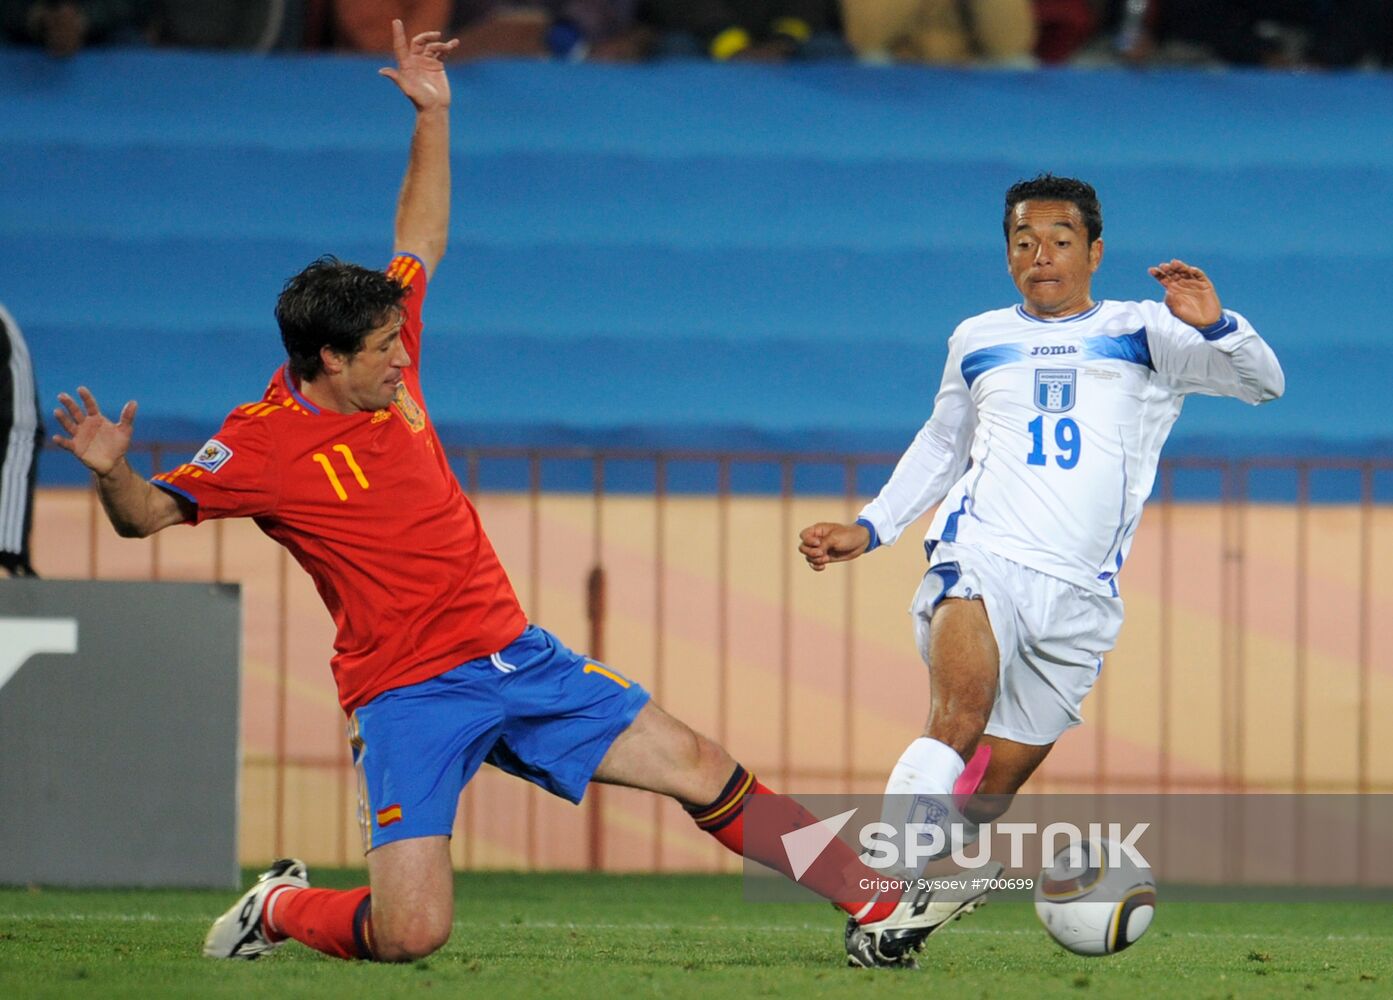 2010 FIFA World Cup. Spain vs. Honduras